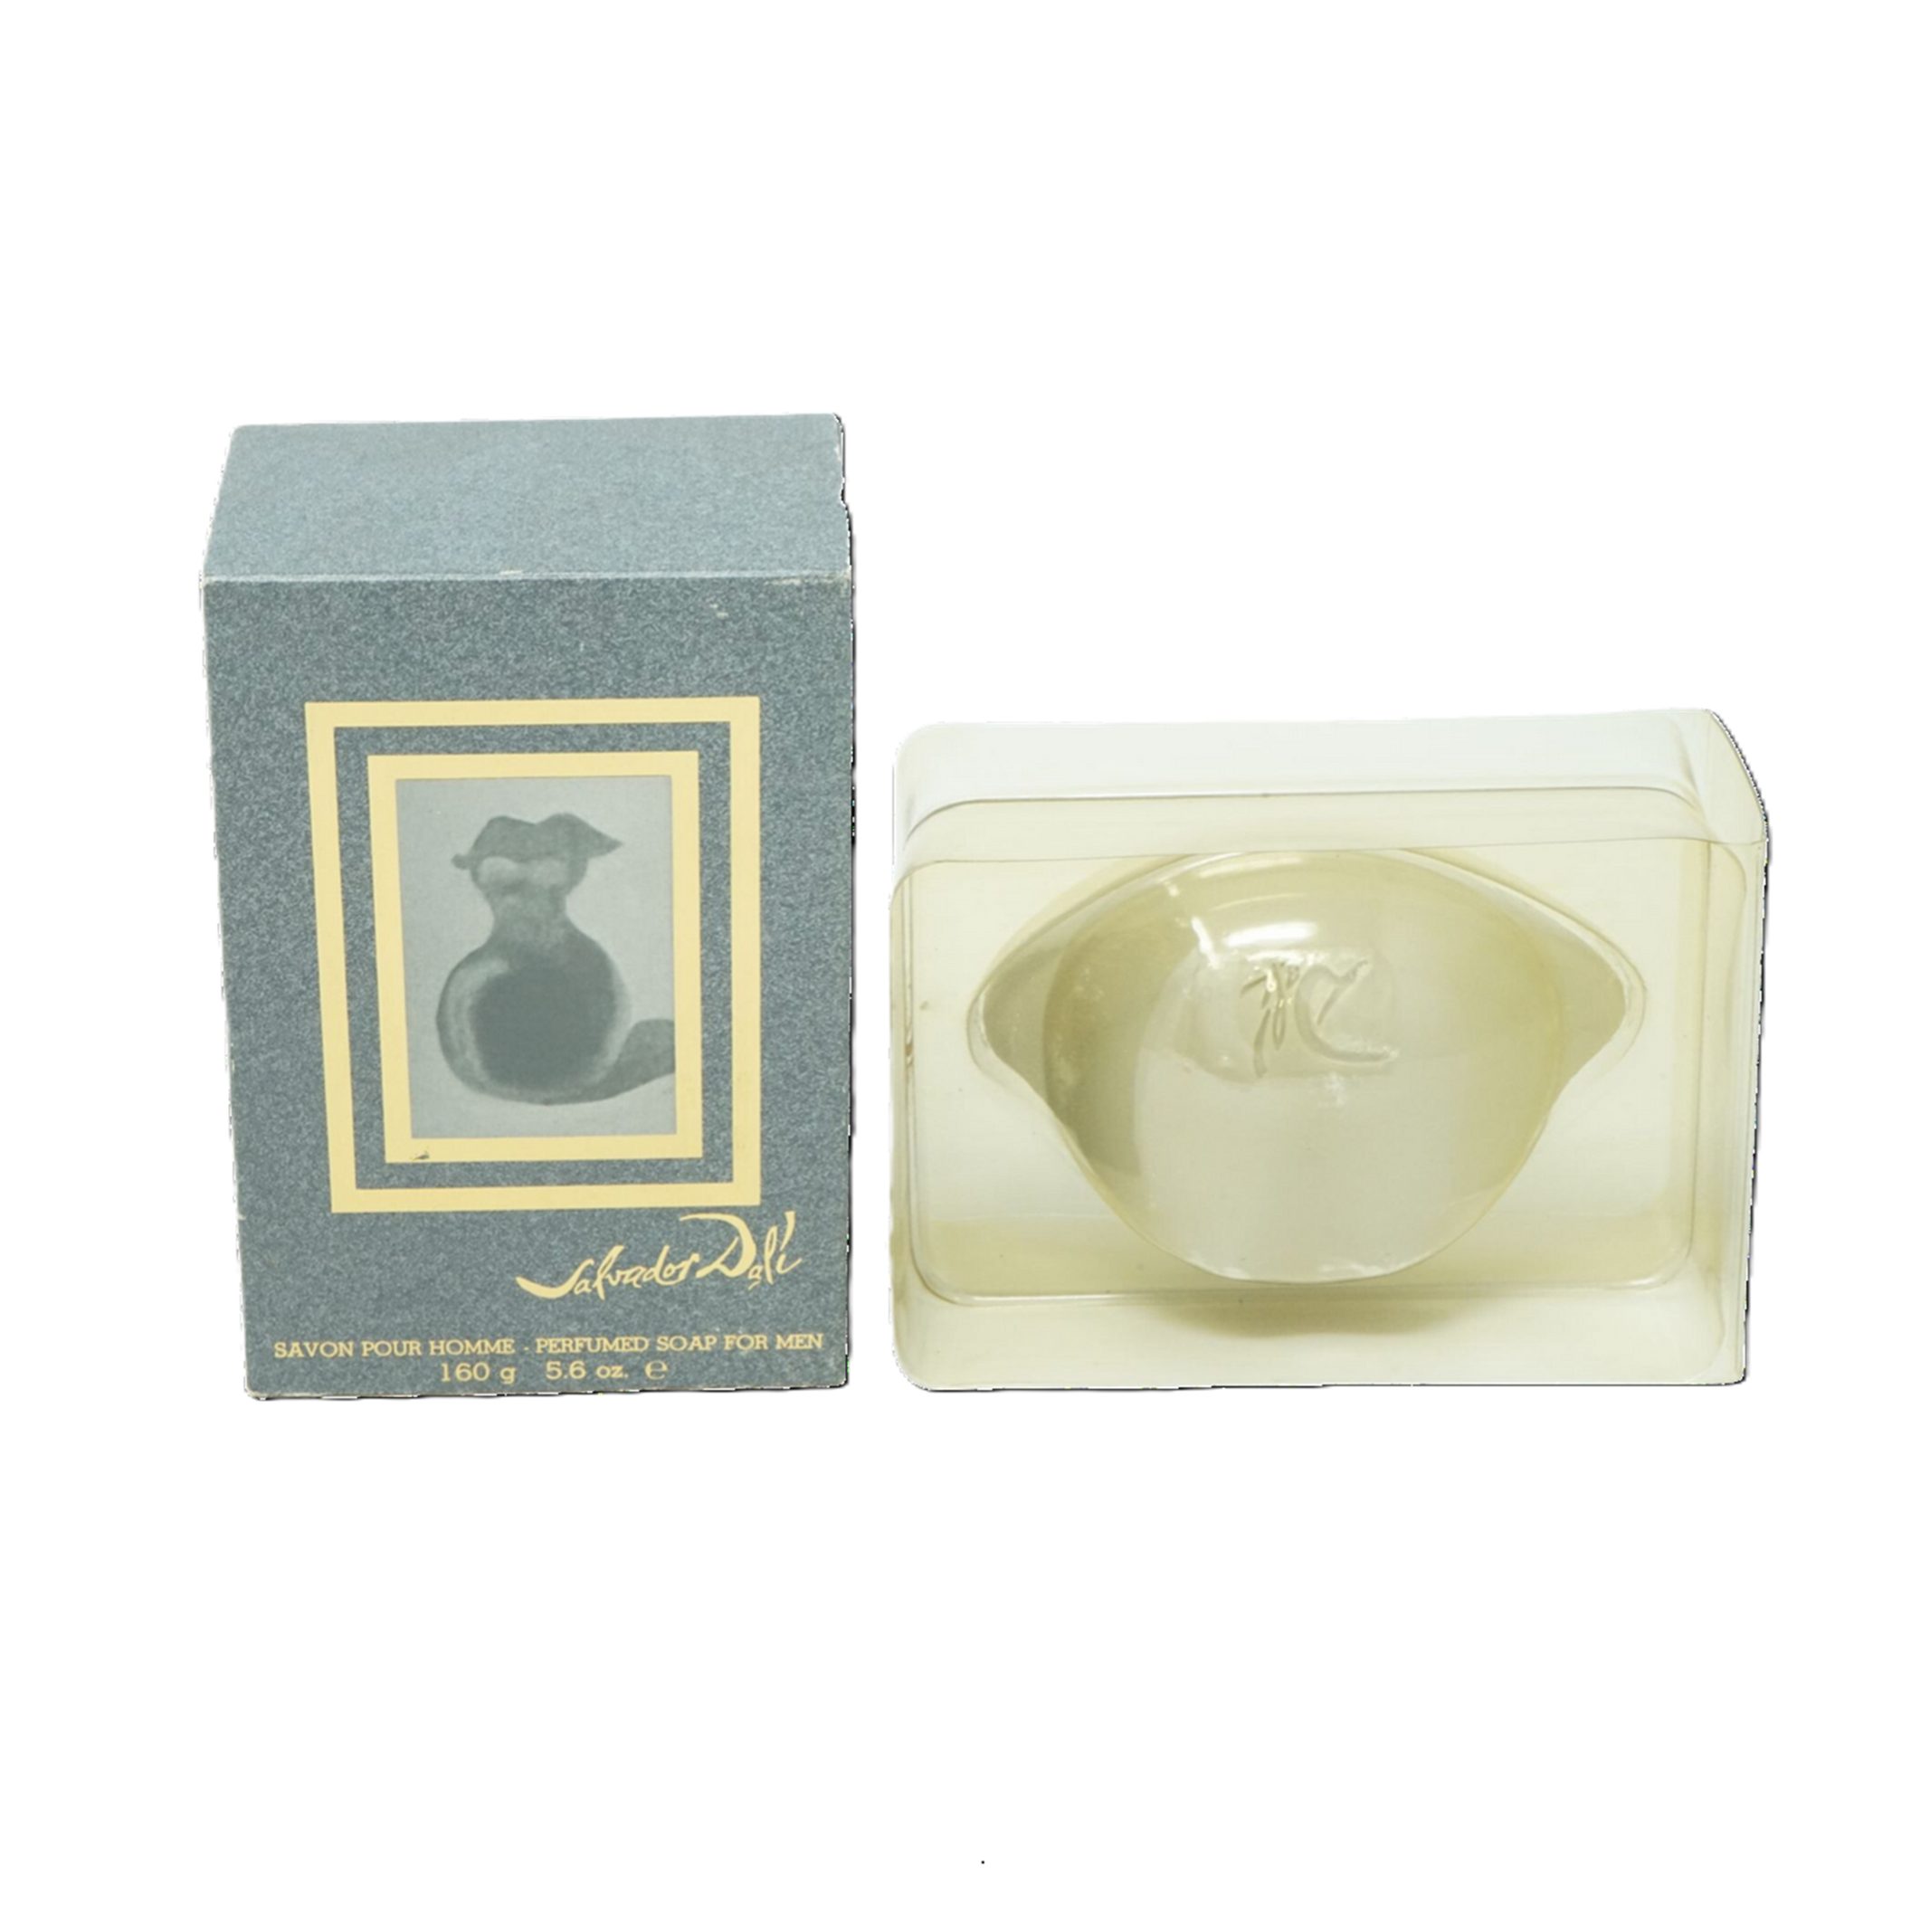 Salvador Dali Handseife Salvador Dali Perfumed Soap seife For Men 160g